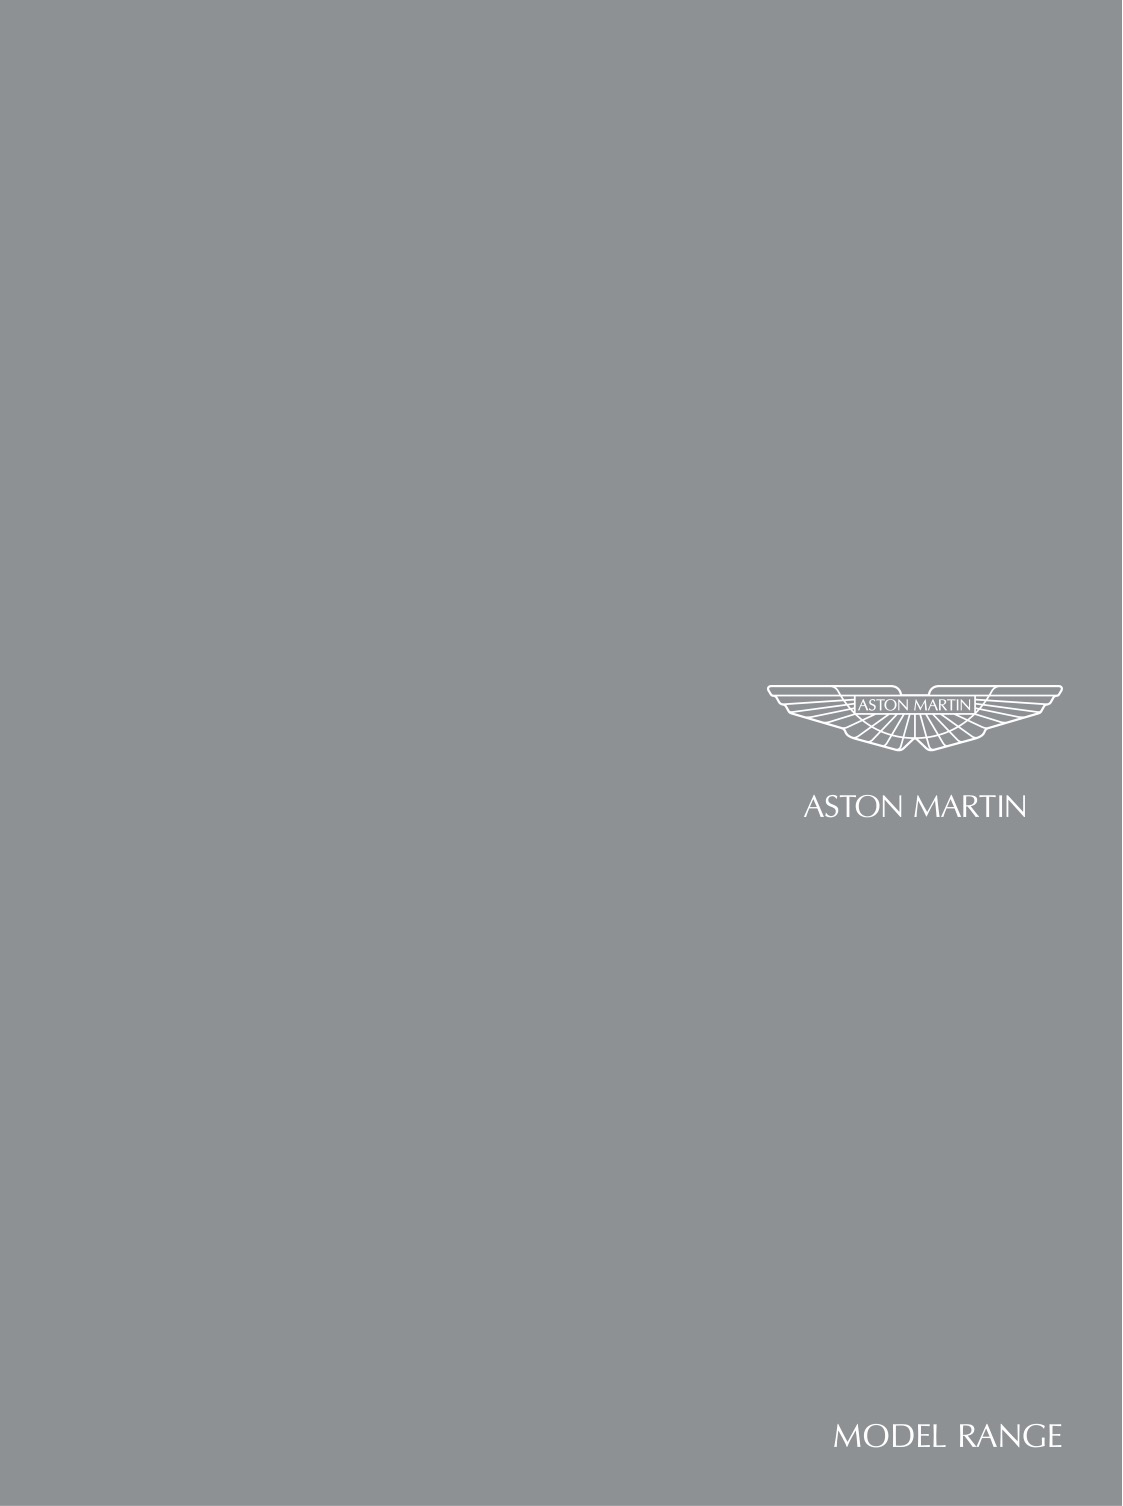 2009 Aston Martin Model Range Brochure